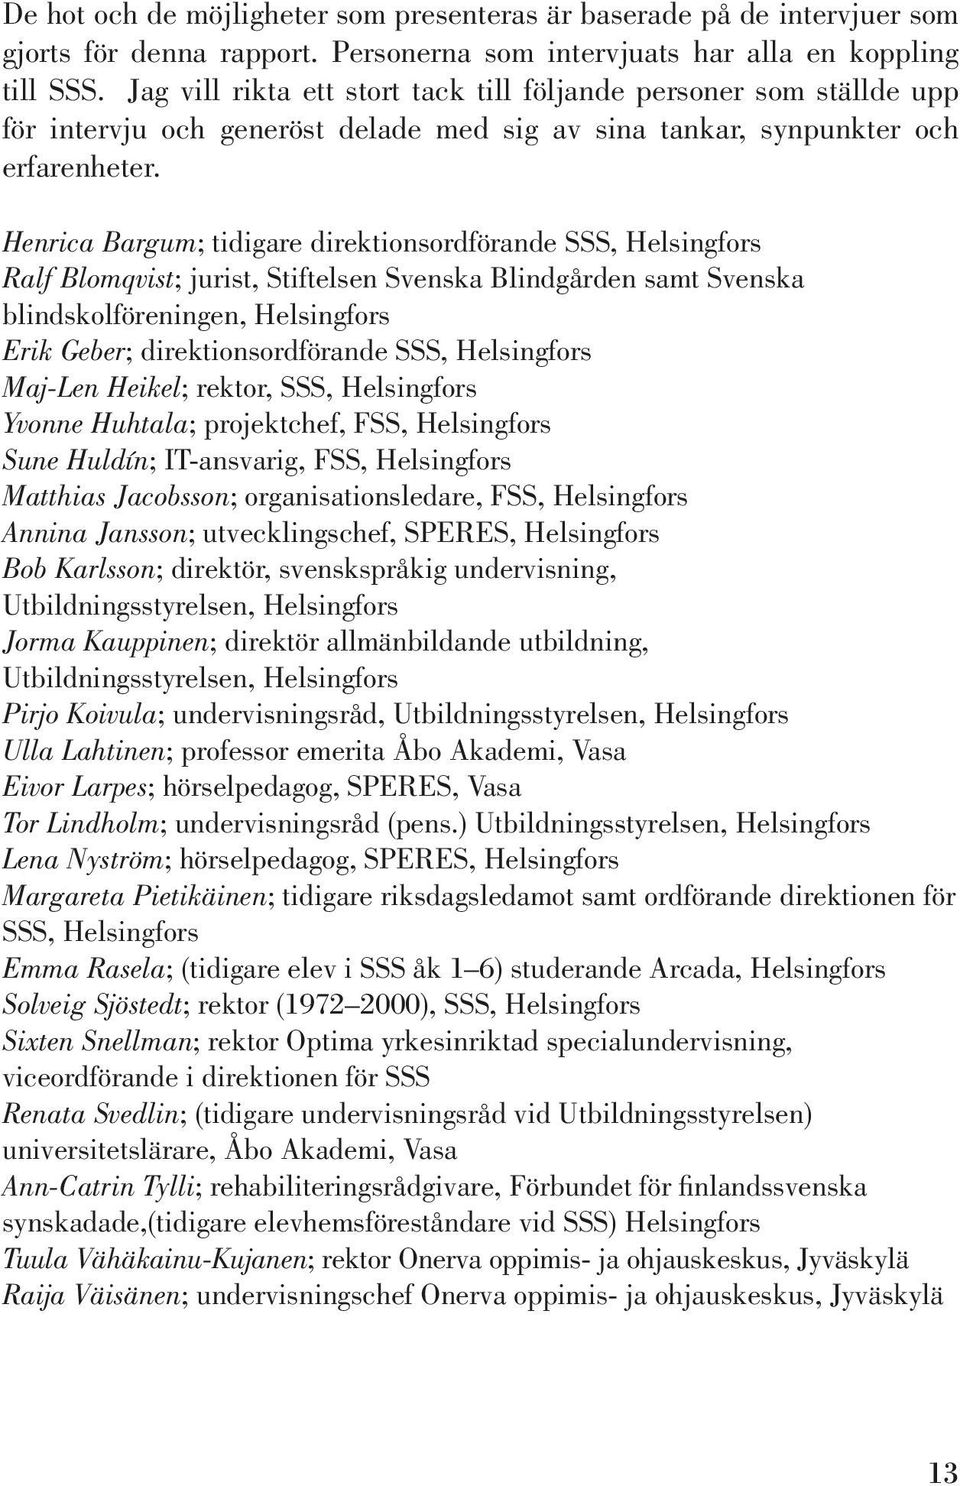 Henrica Bargum; tidigare direktionsordförande SSS, Helsingfors Ralf Blomqvist; jurist, Stiftelsen Svenska Blindgården samt Svenska blindskolföreningen, Helsingfors Erik Geber; direktionsordförande